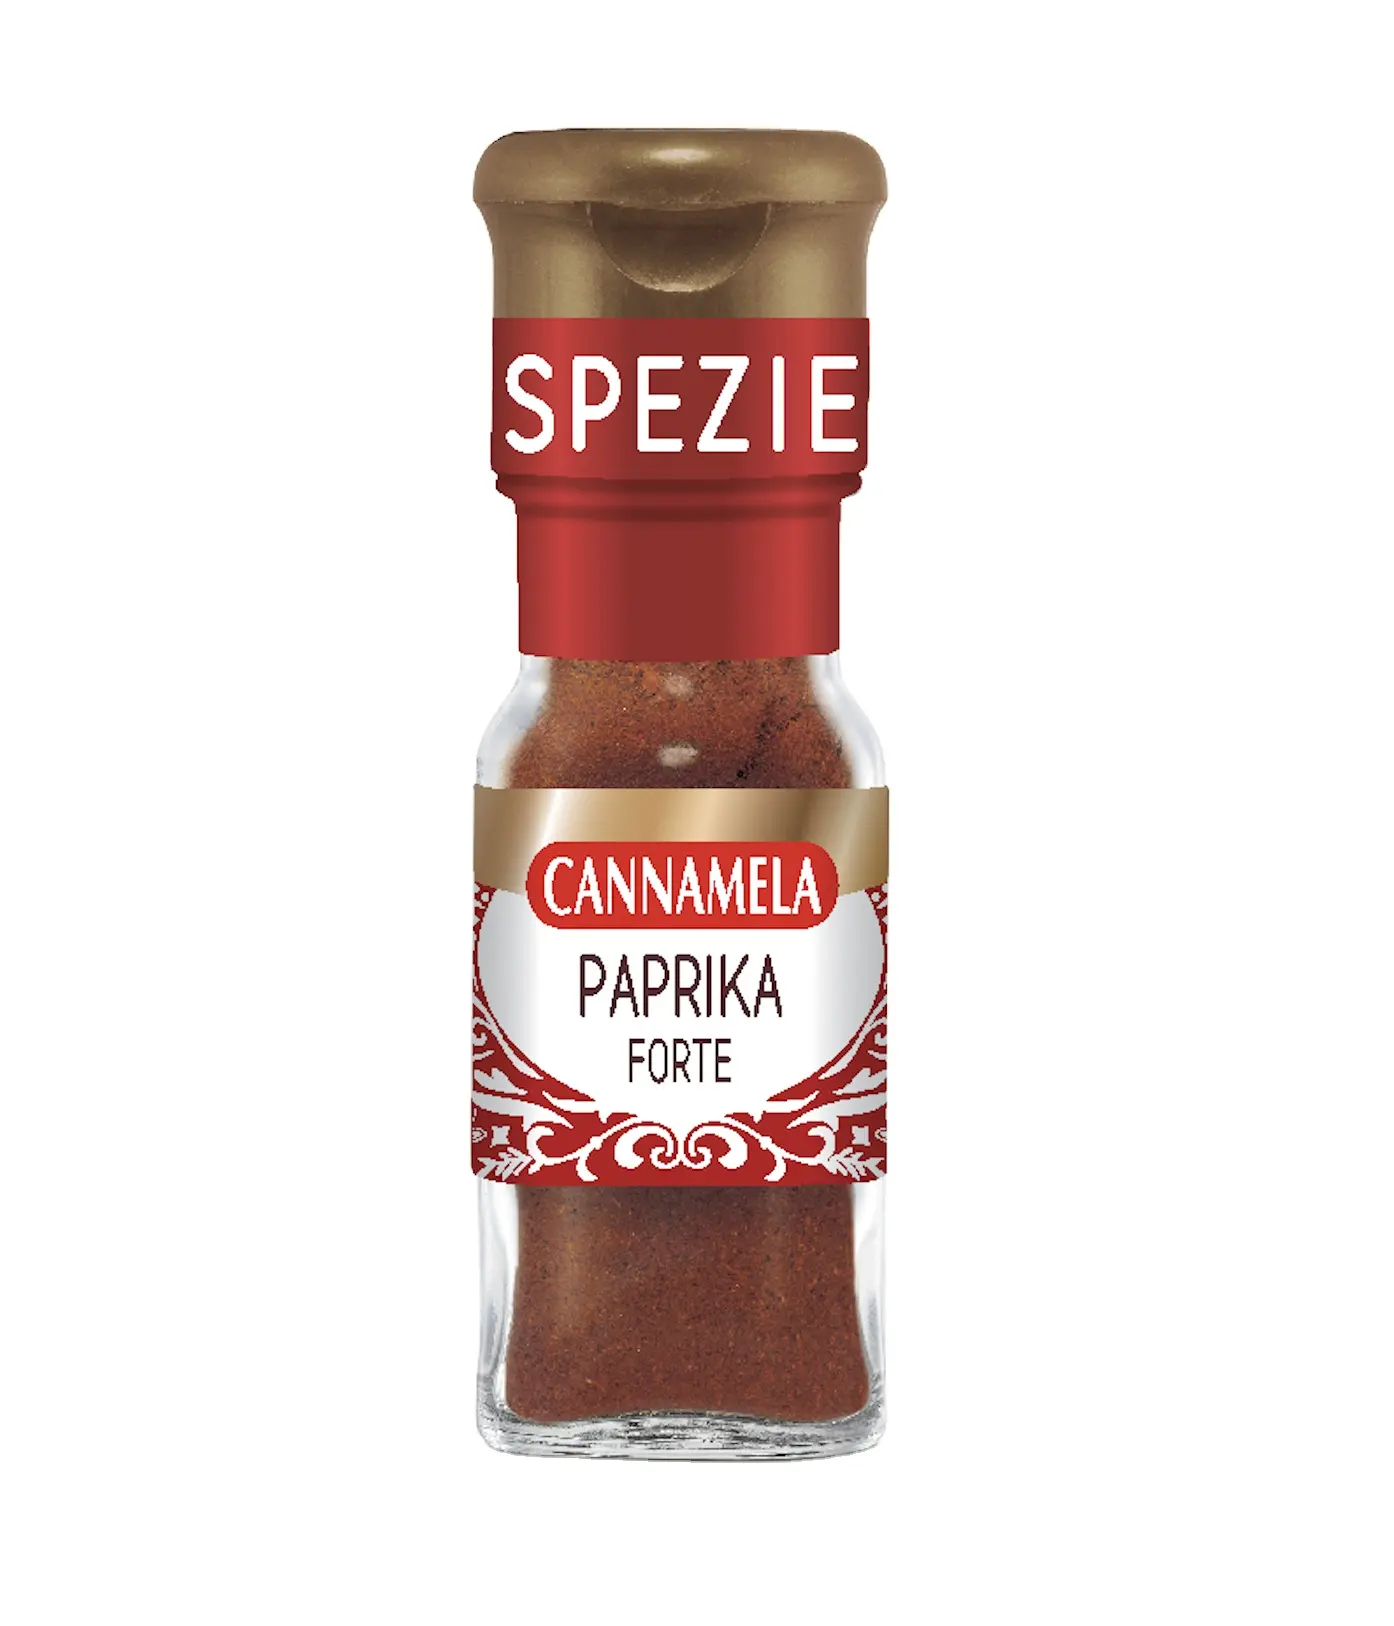 Hochwertige italienische Paprika starkes Pulver Canna mela Kräuter & Gewürze für internat ionales Kochen 1 Glas 25g